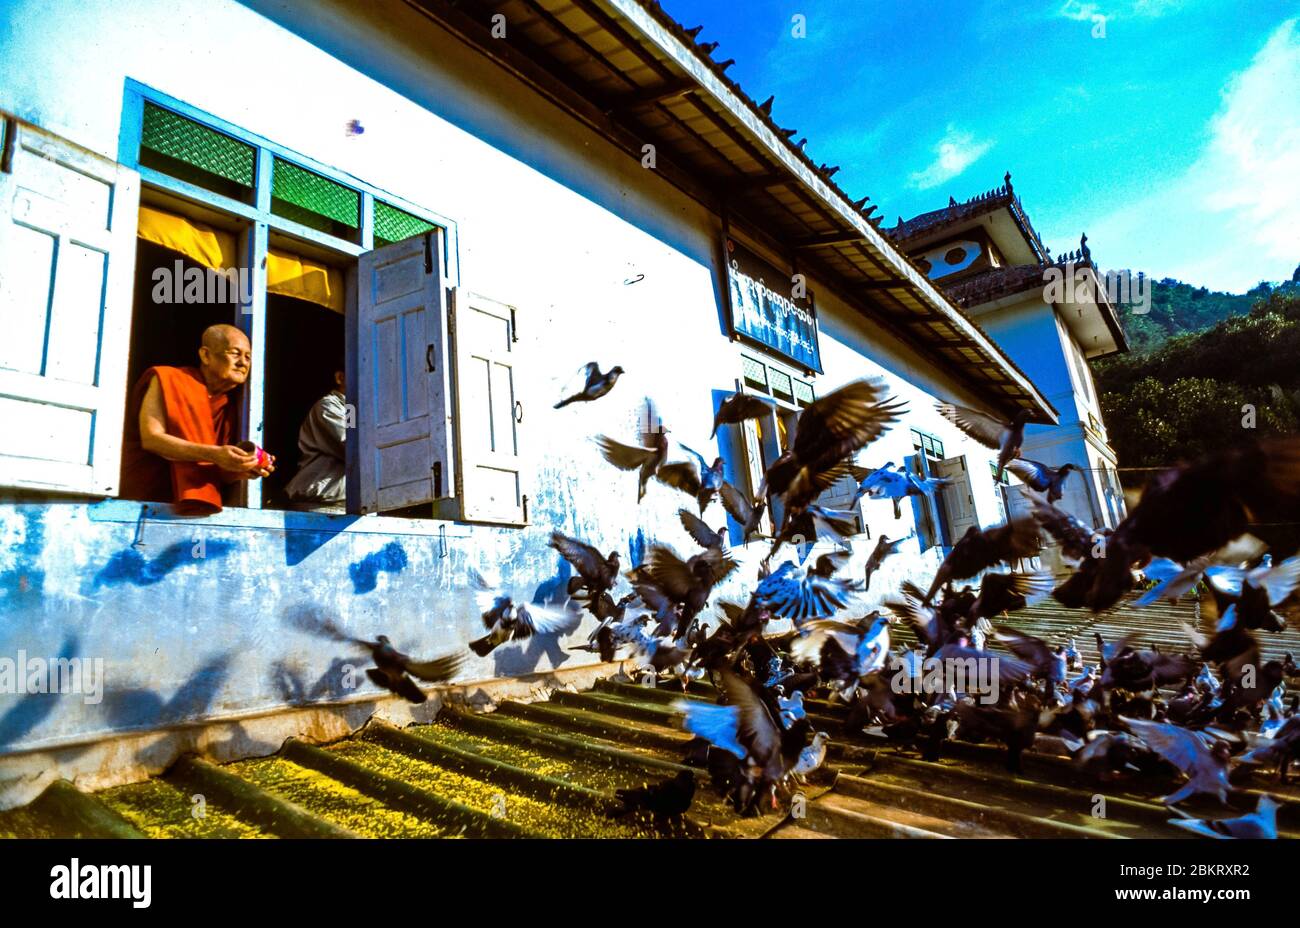 Birmanie, Myanmar, Etat Karen, hPa-an, le vénérable sayadaw Thamanya, Dieu vivant pour beaucoup de Birmans, nourrit les pigeons de sa chambre, dans son ashram Banque D'Images